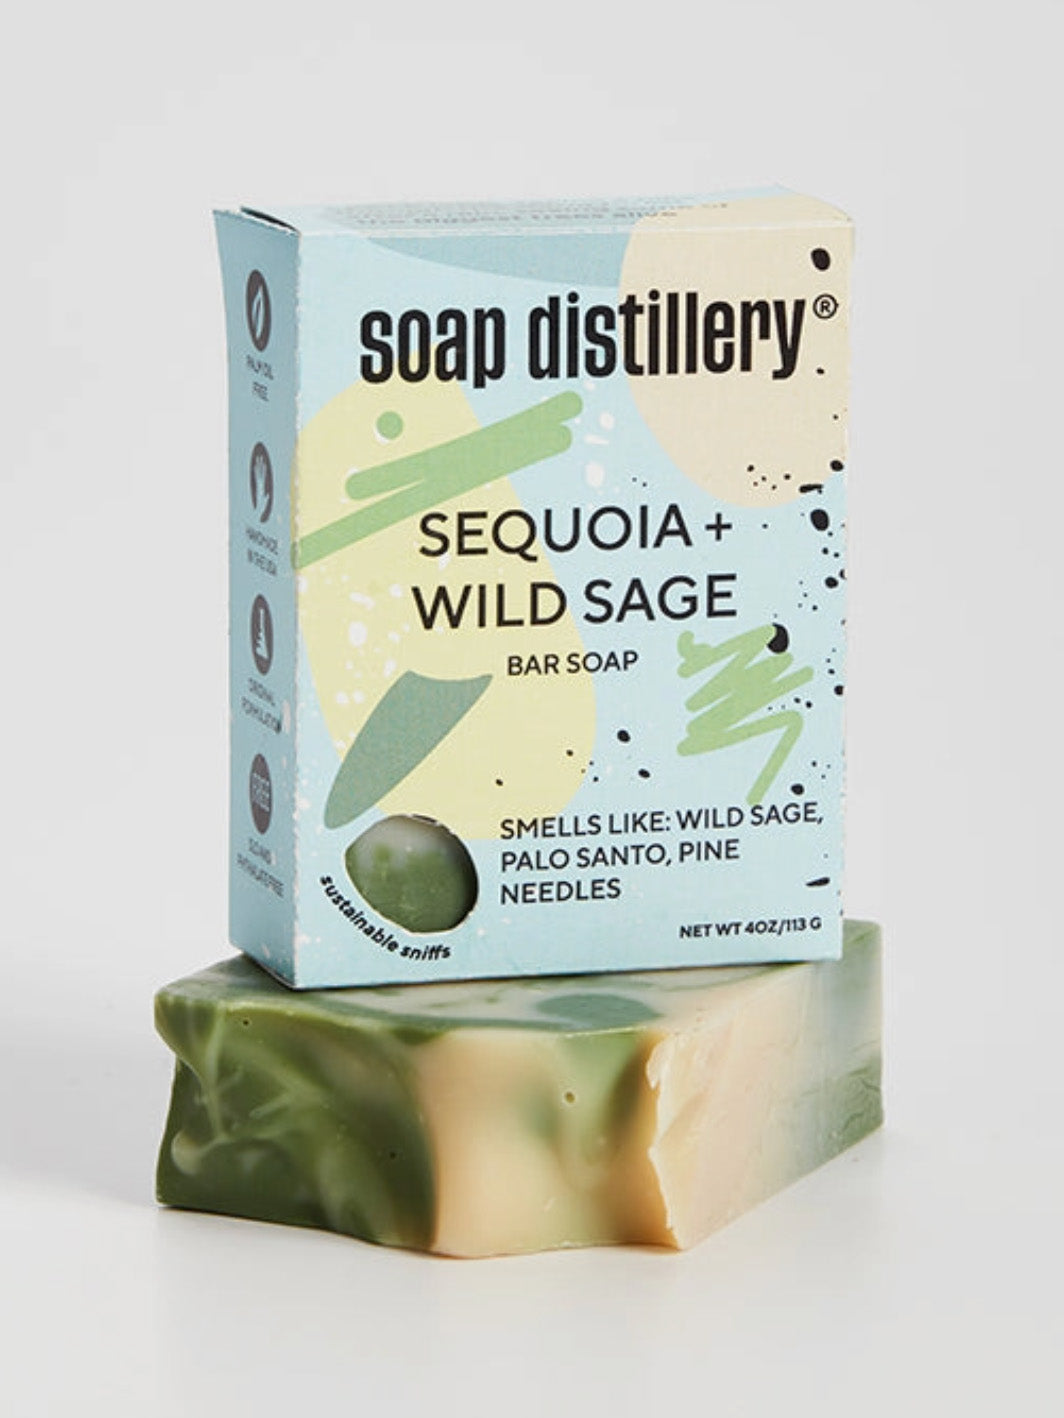 sequoia + wild sage bar soap